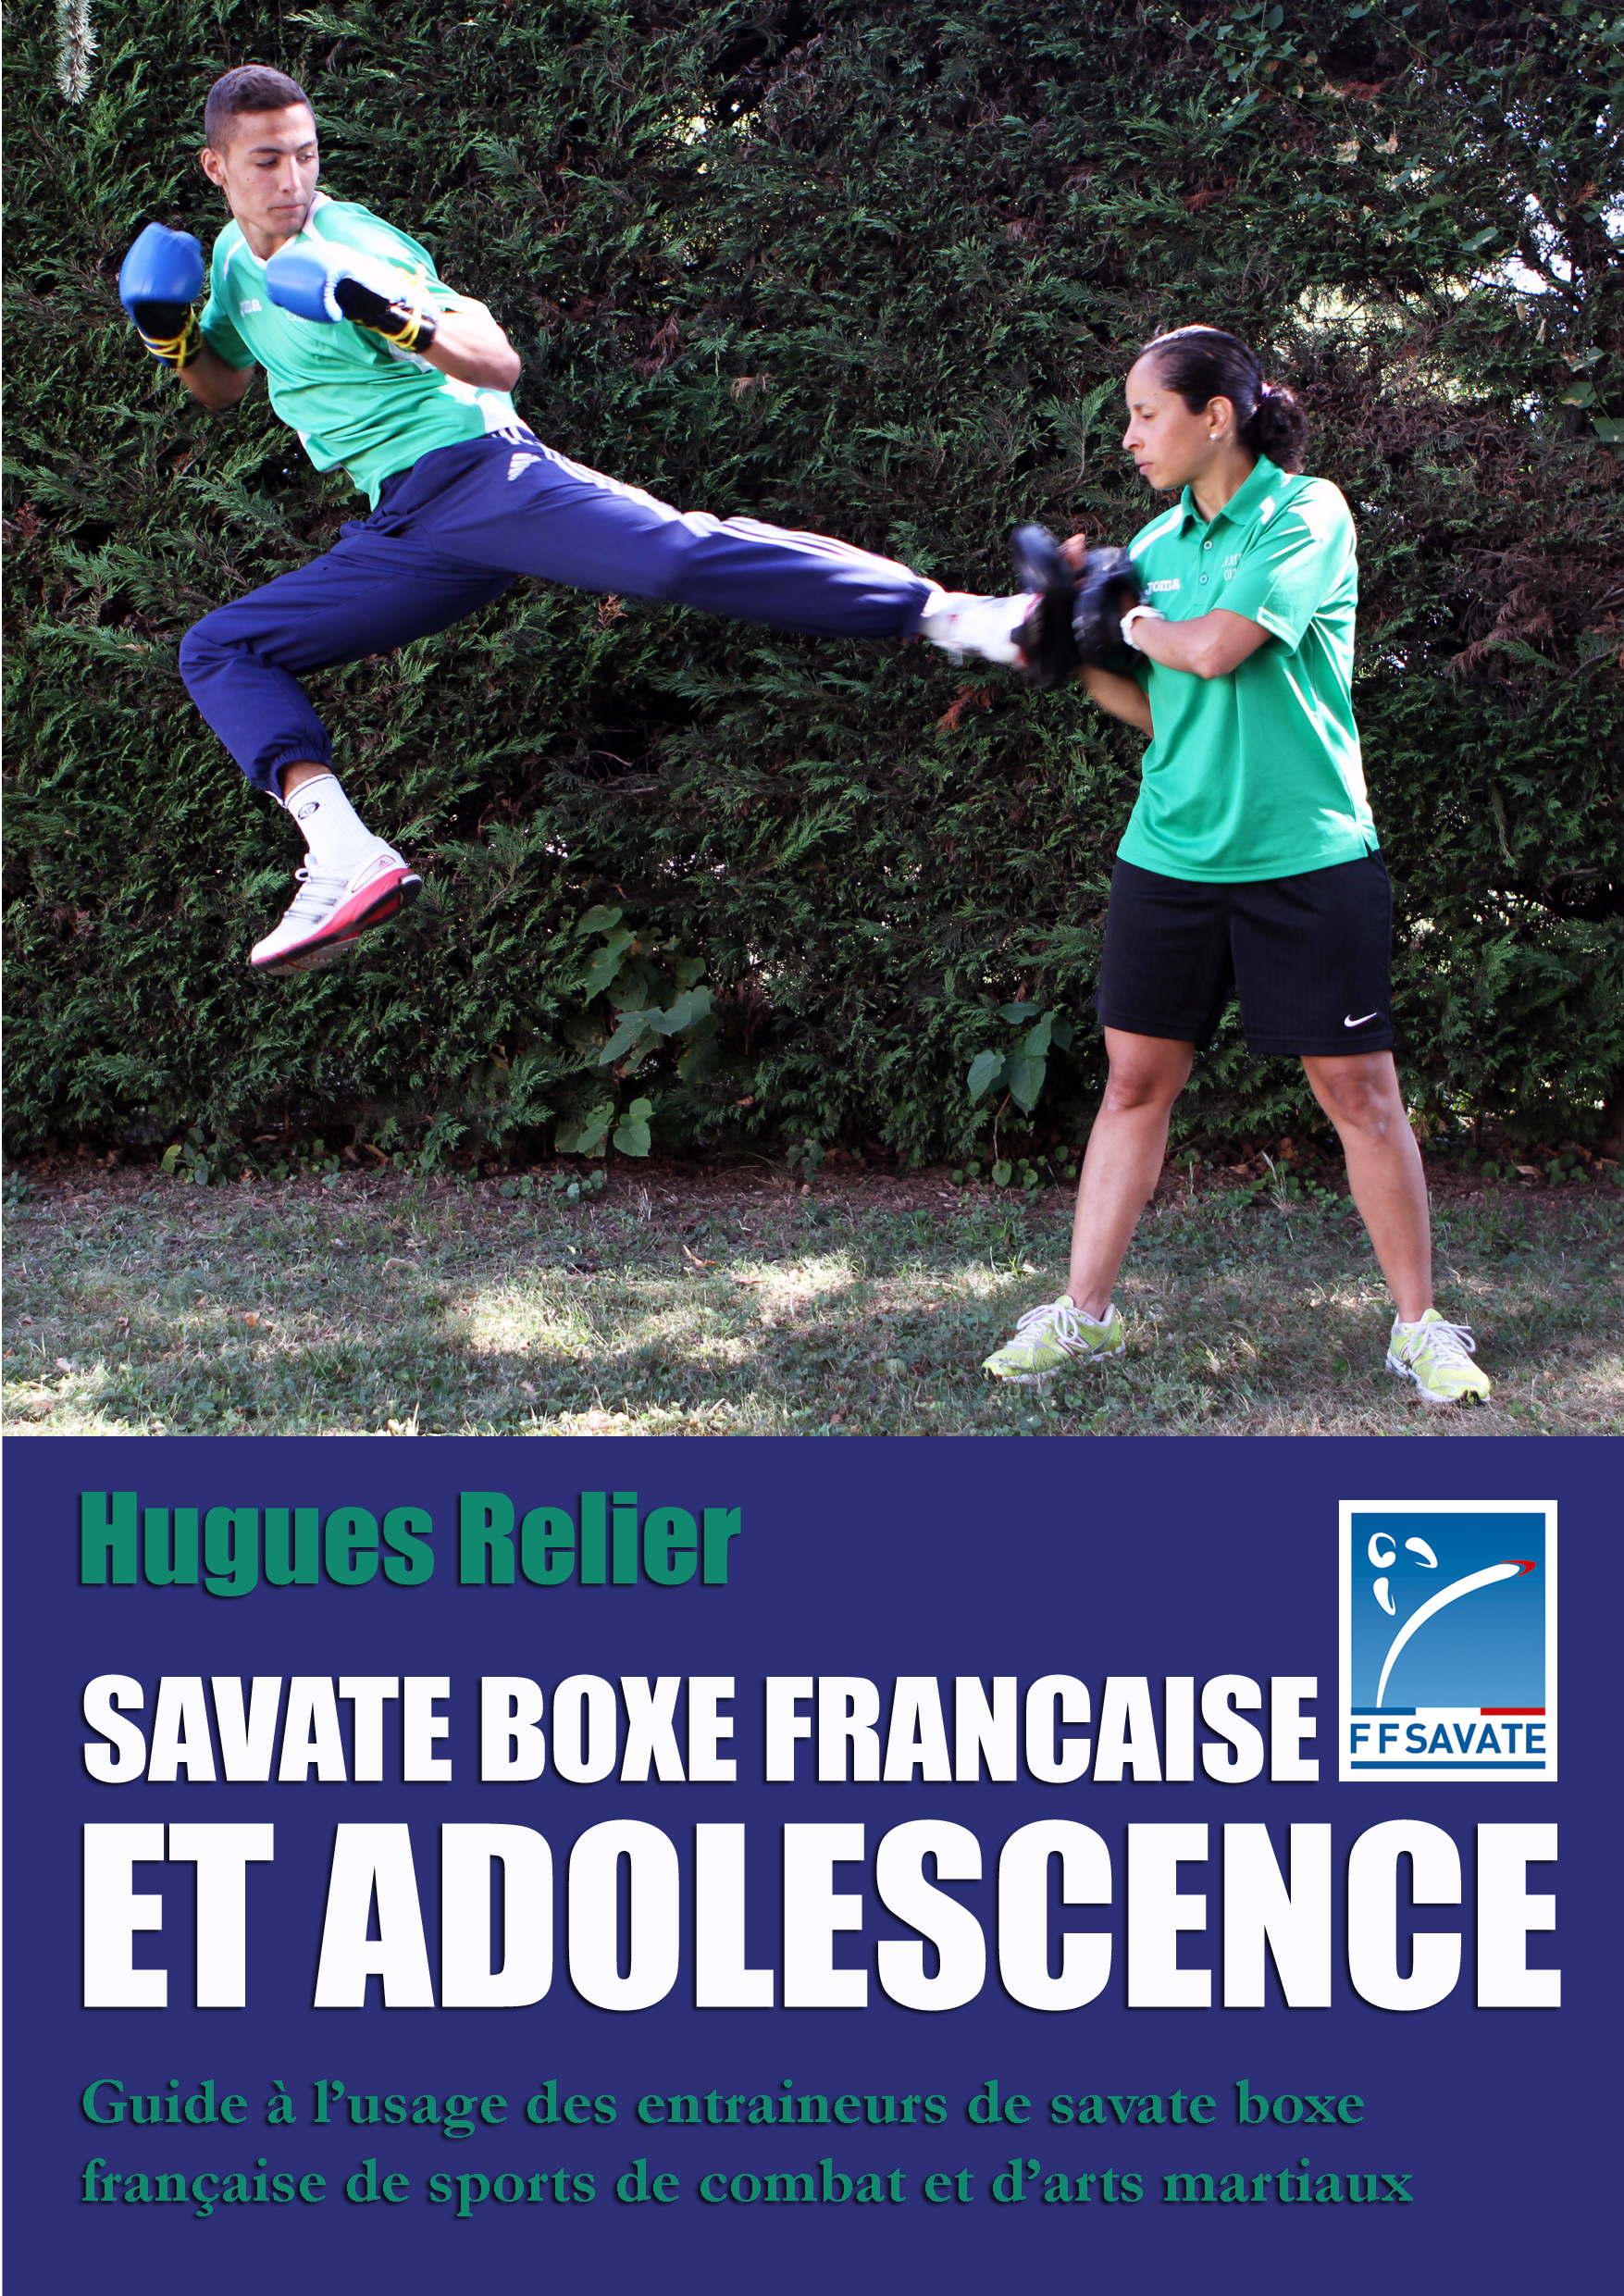 Boxe française : tout savoir sur la savate